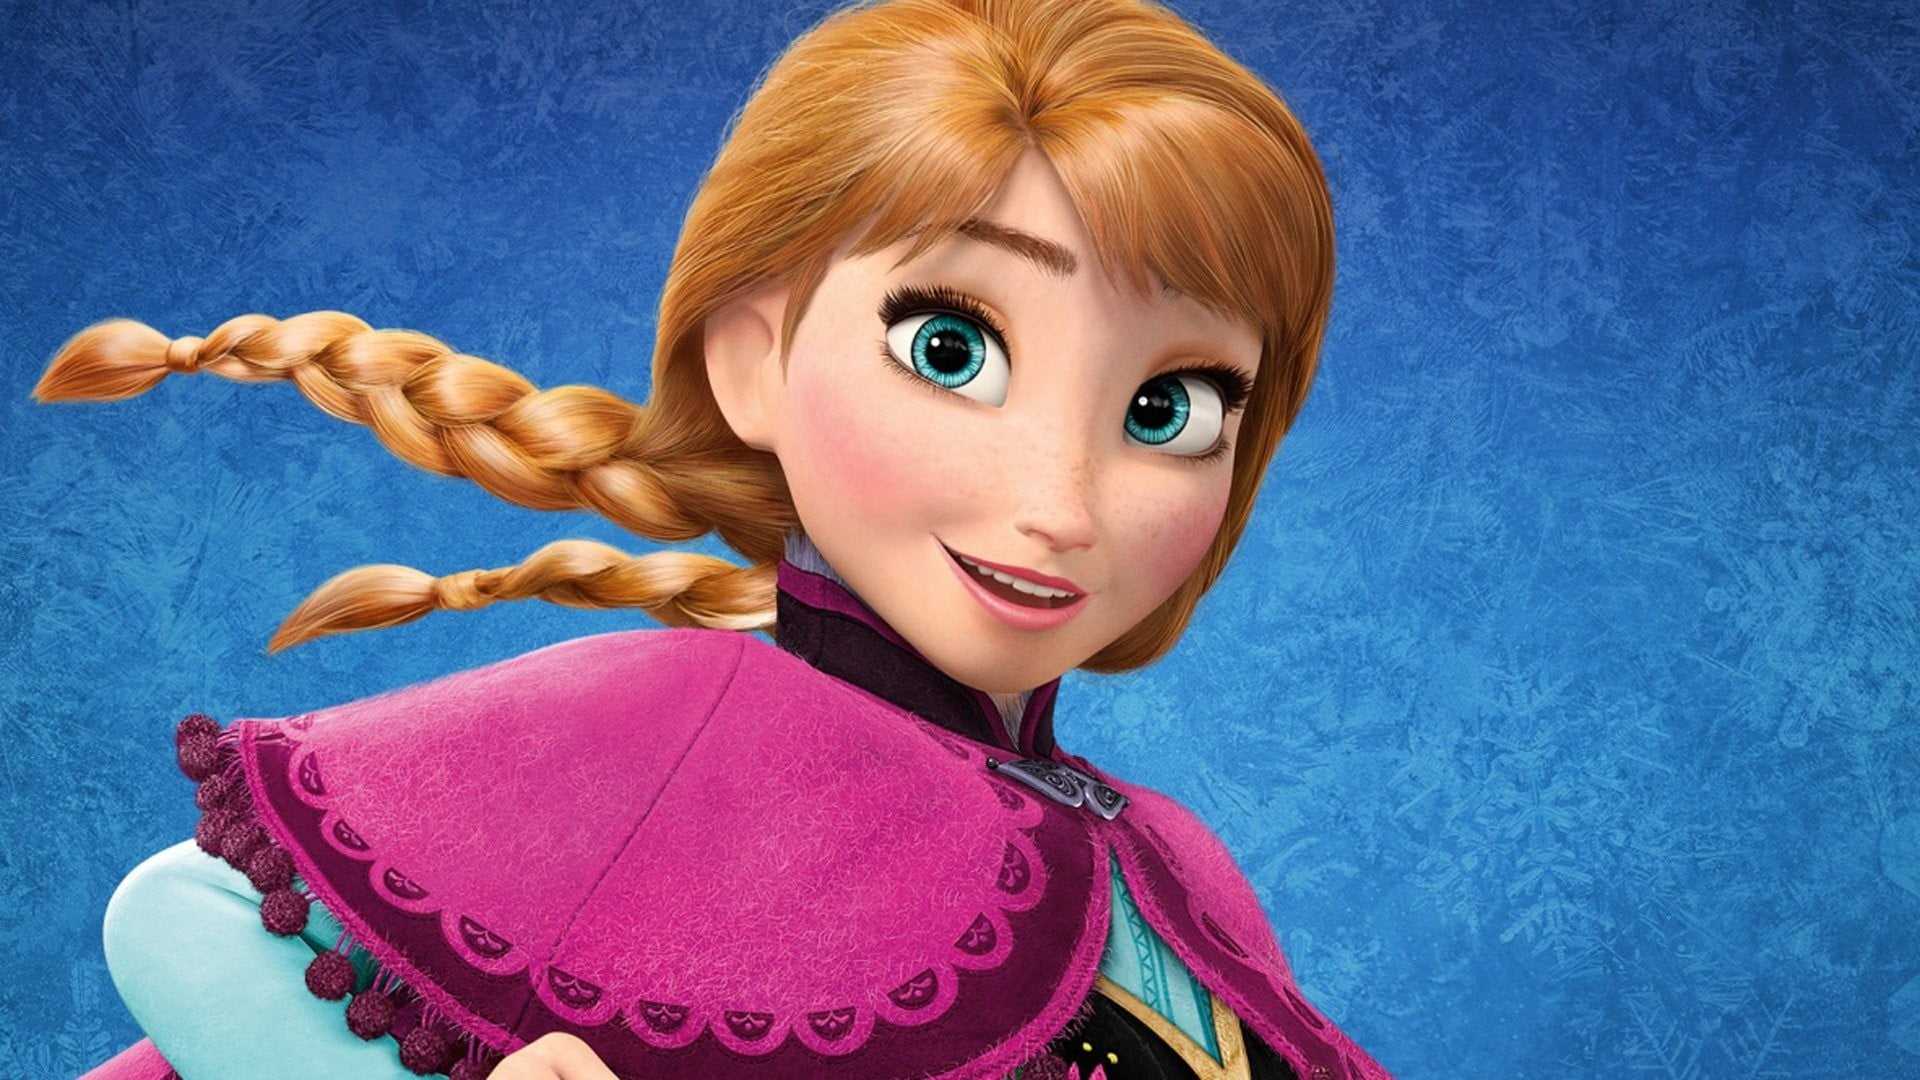 Disney Frozen Anna wallpaper, Princess Anna, Frozen (movie), movies